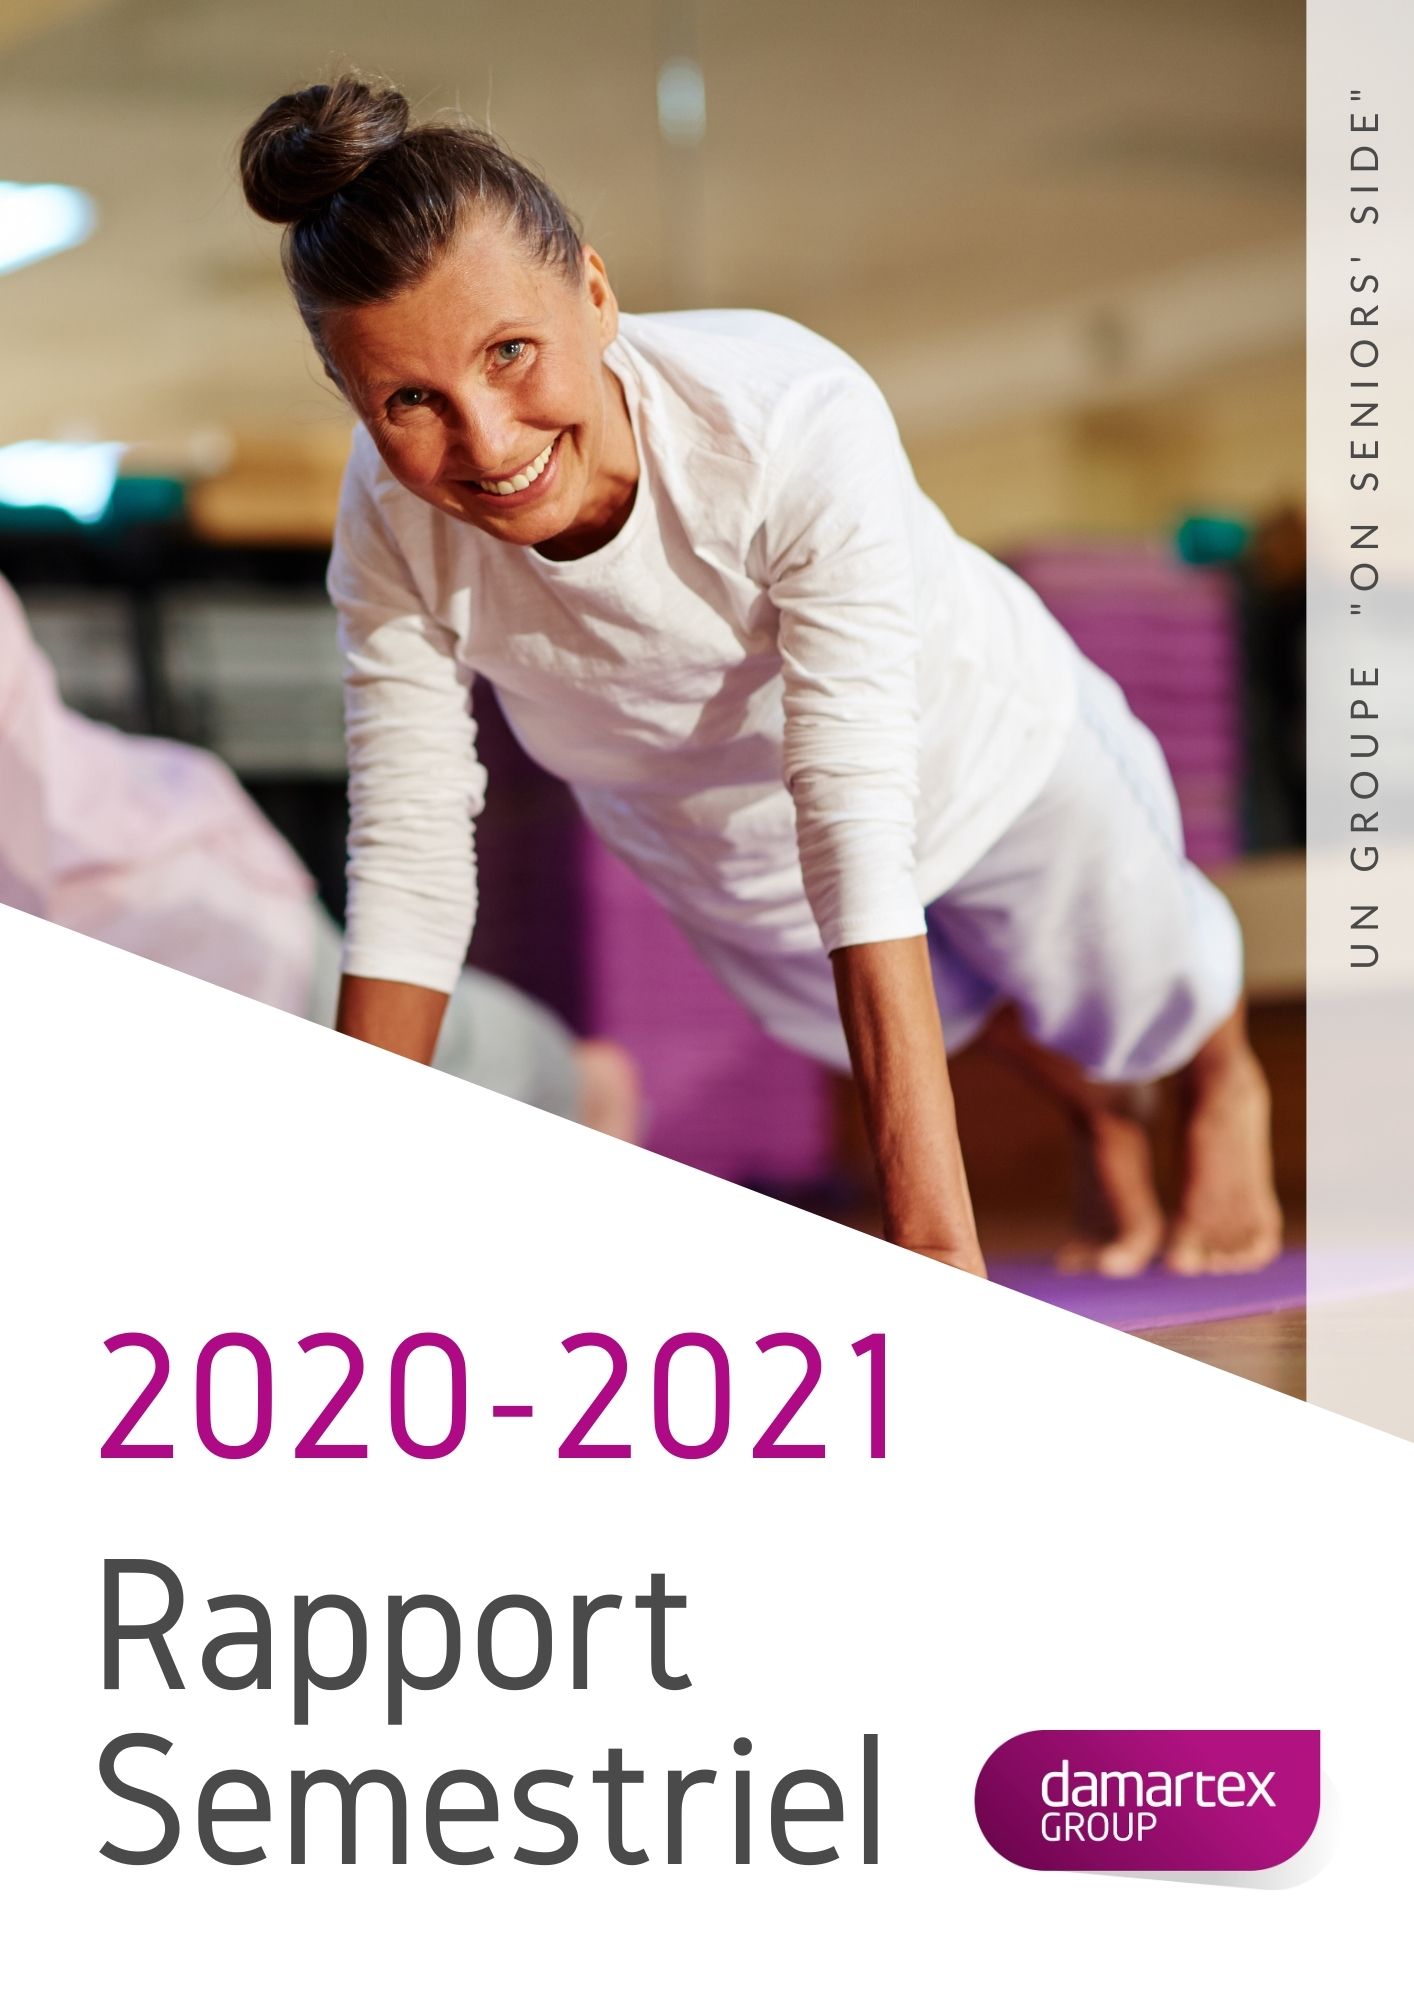 Rapport semestriel 2020-2021